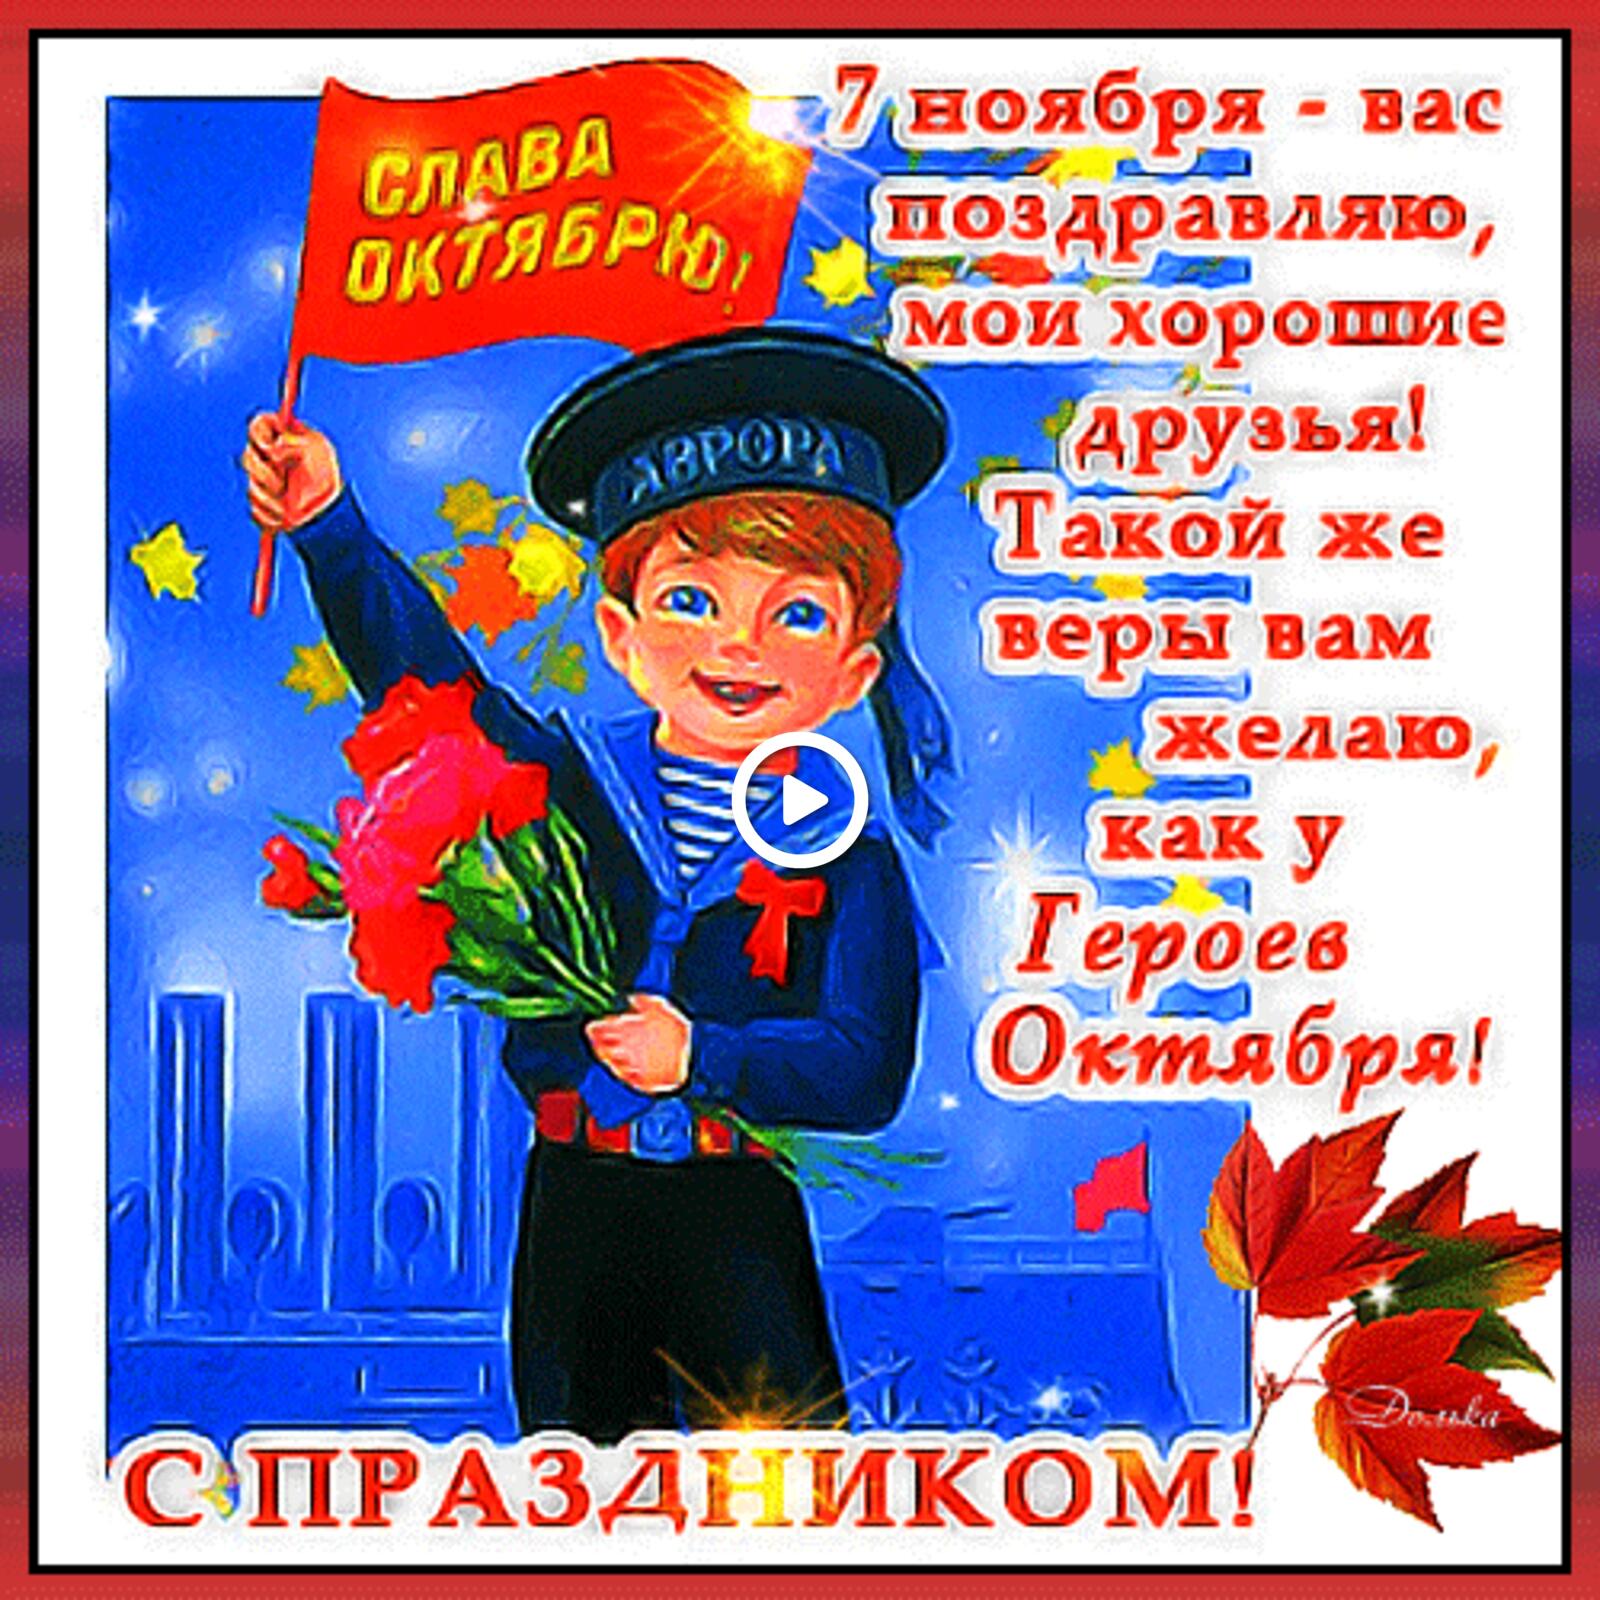 一张以11月7日 革命 男孩为主题的明信片